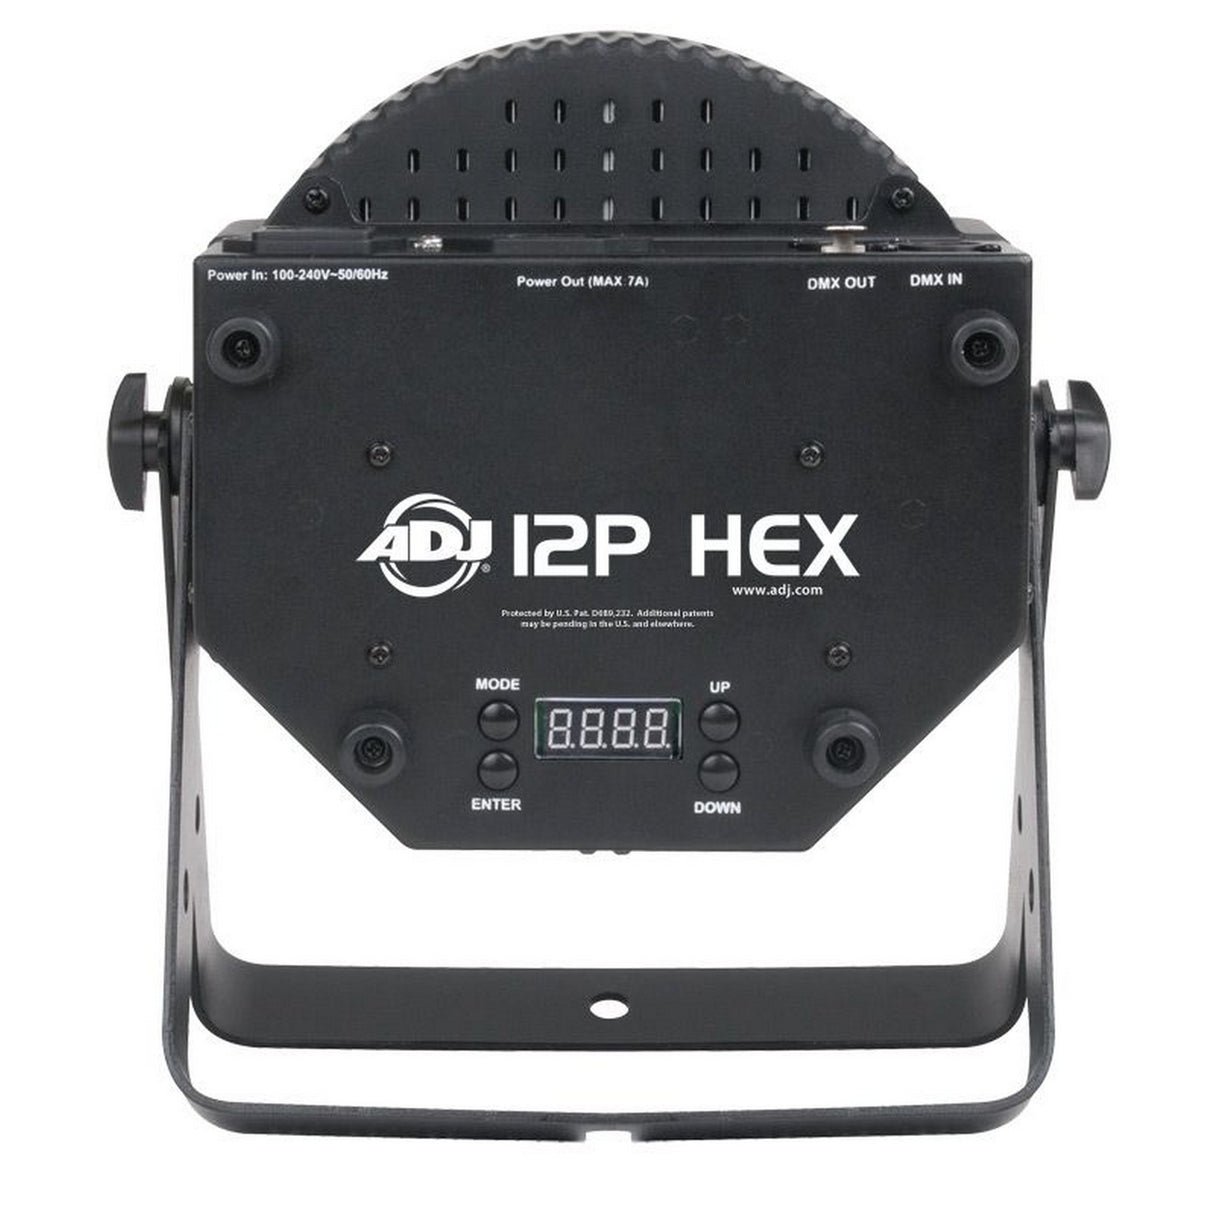 ADJ 12P HEX 12 x 12W LED Par Fixture (Used)